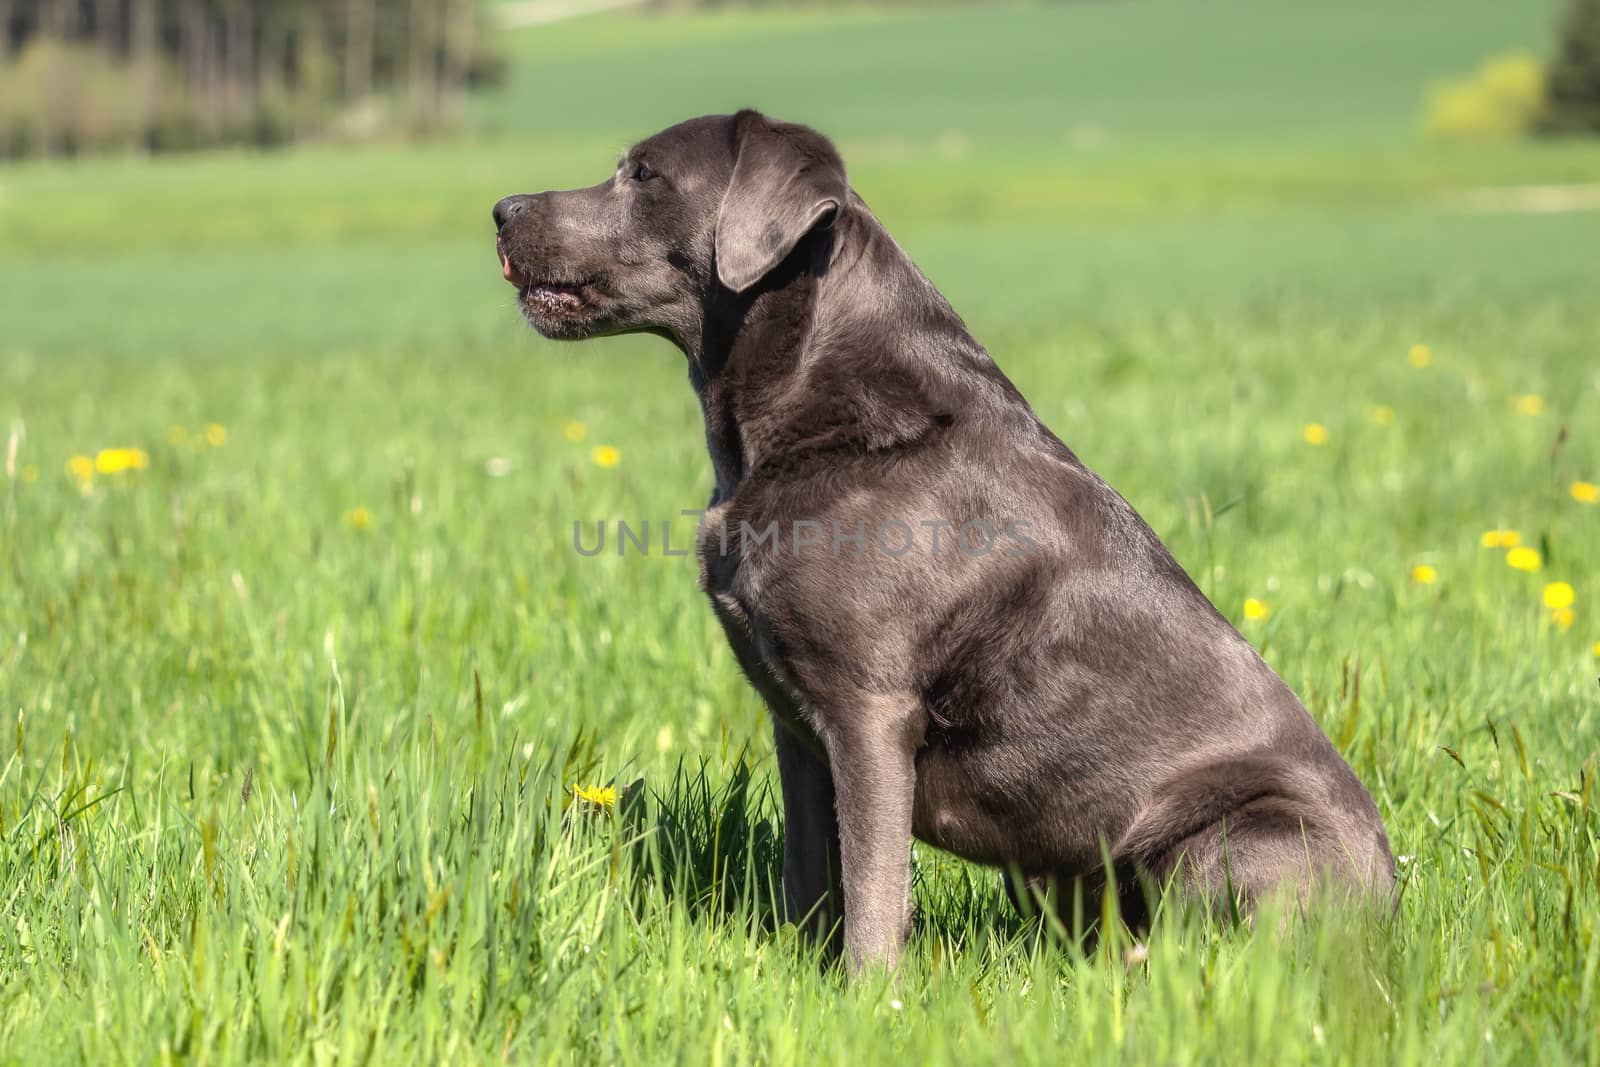 A beautiful dark Labrador Retriever plays outside